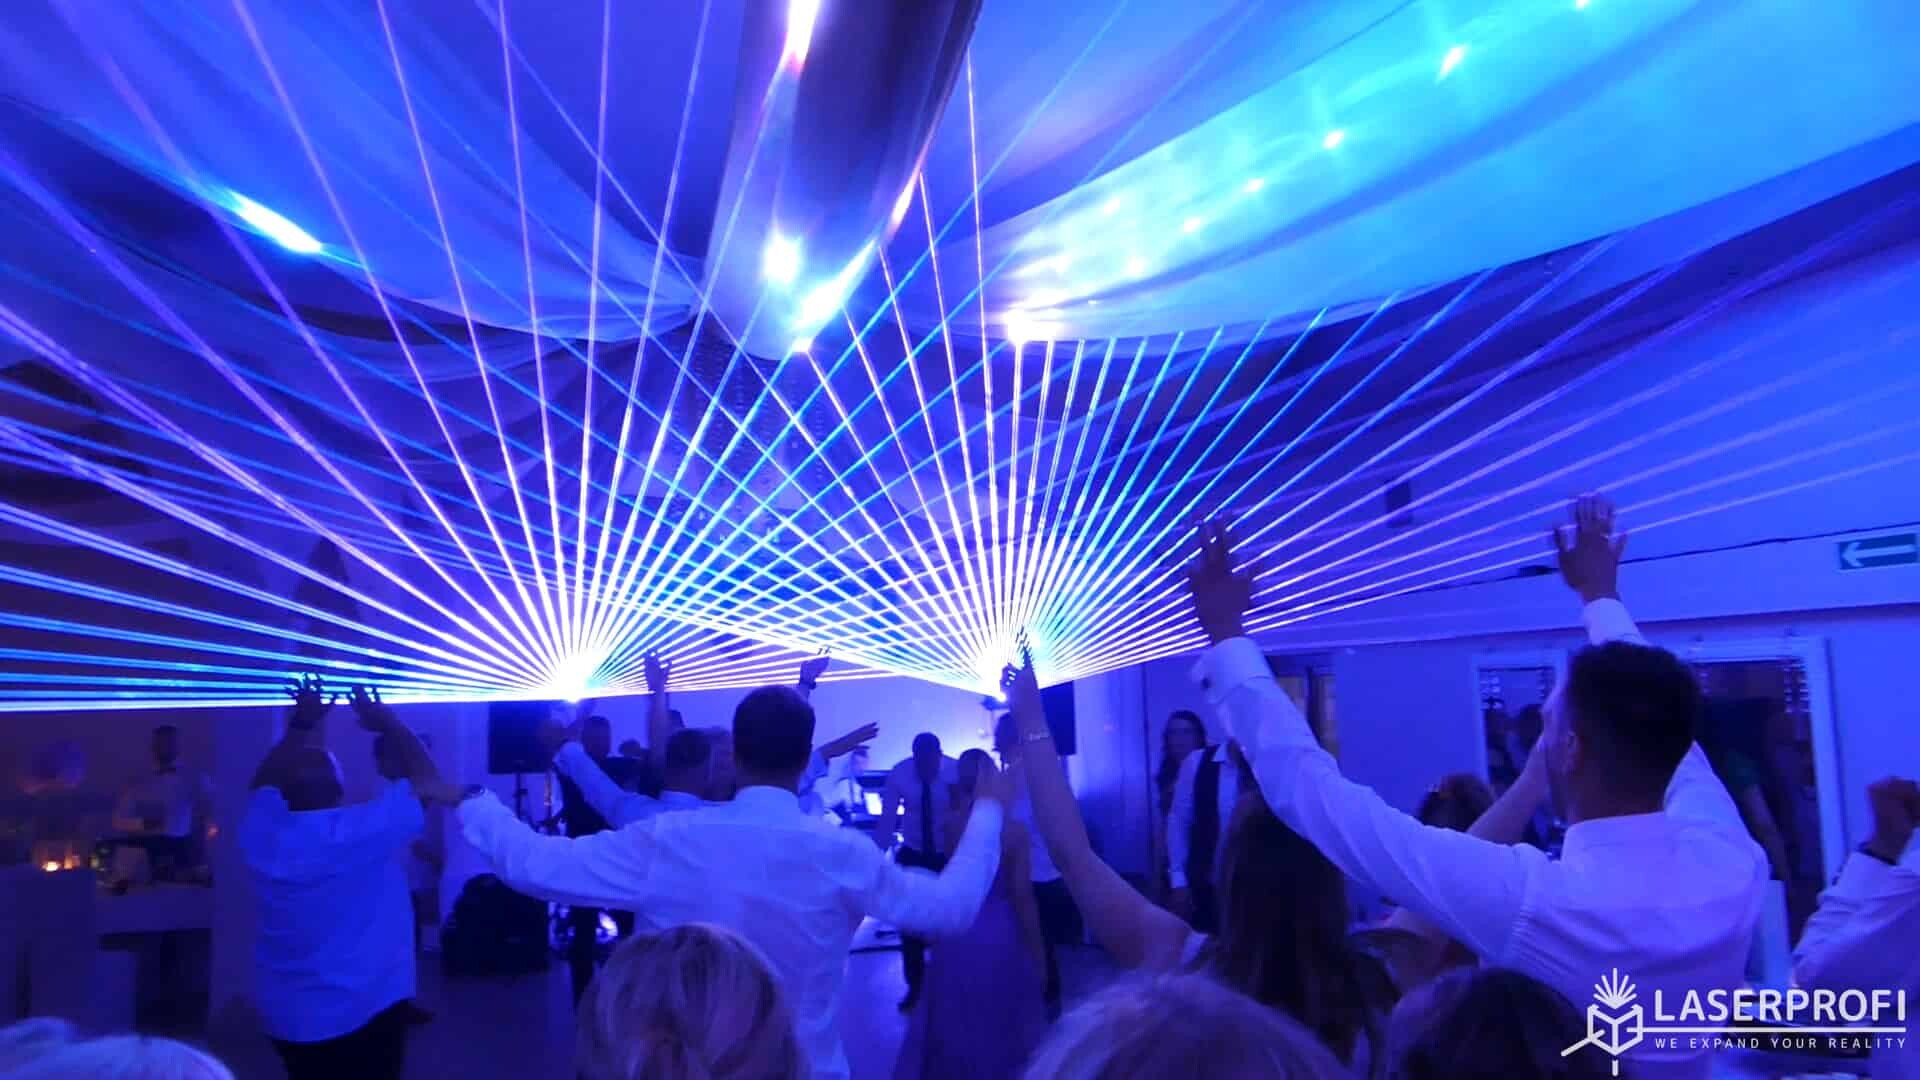 Pokaz laserowy na weselu niebieskie wiązki laserowe